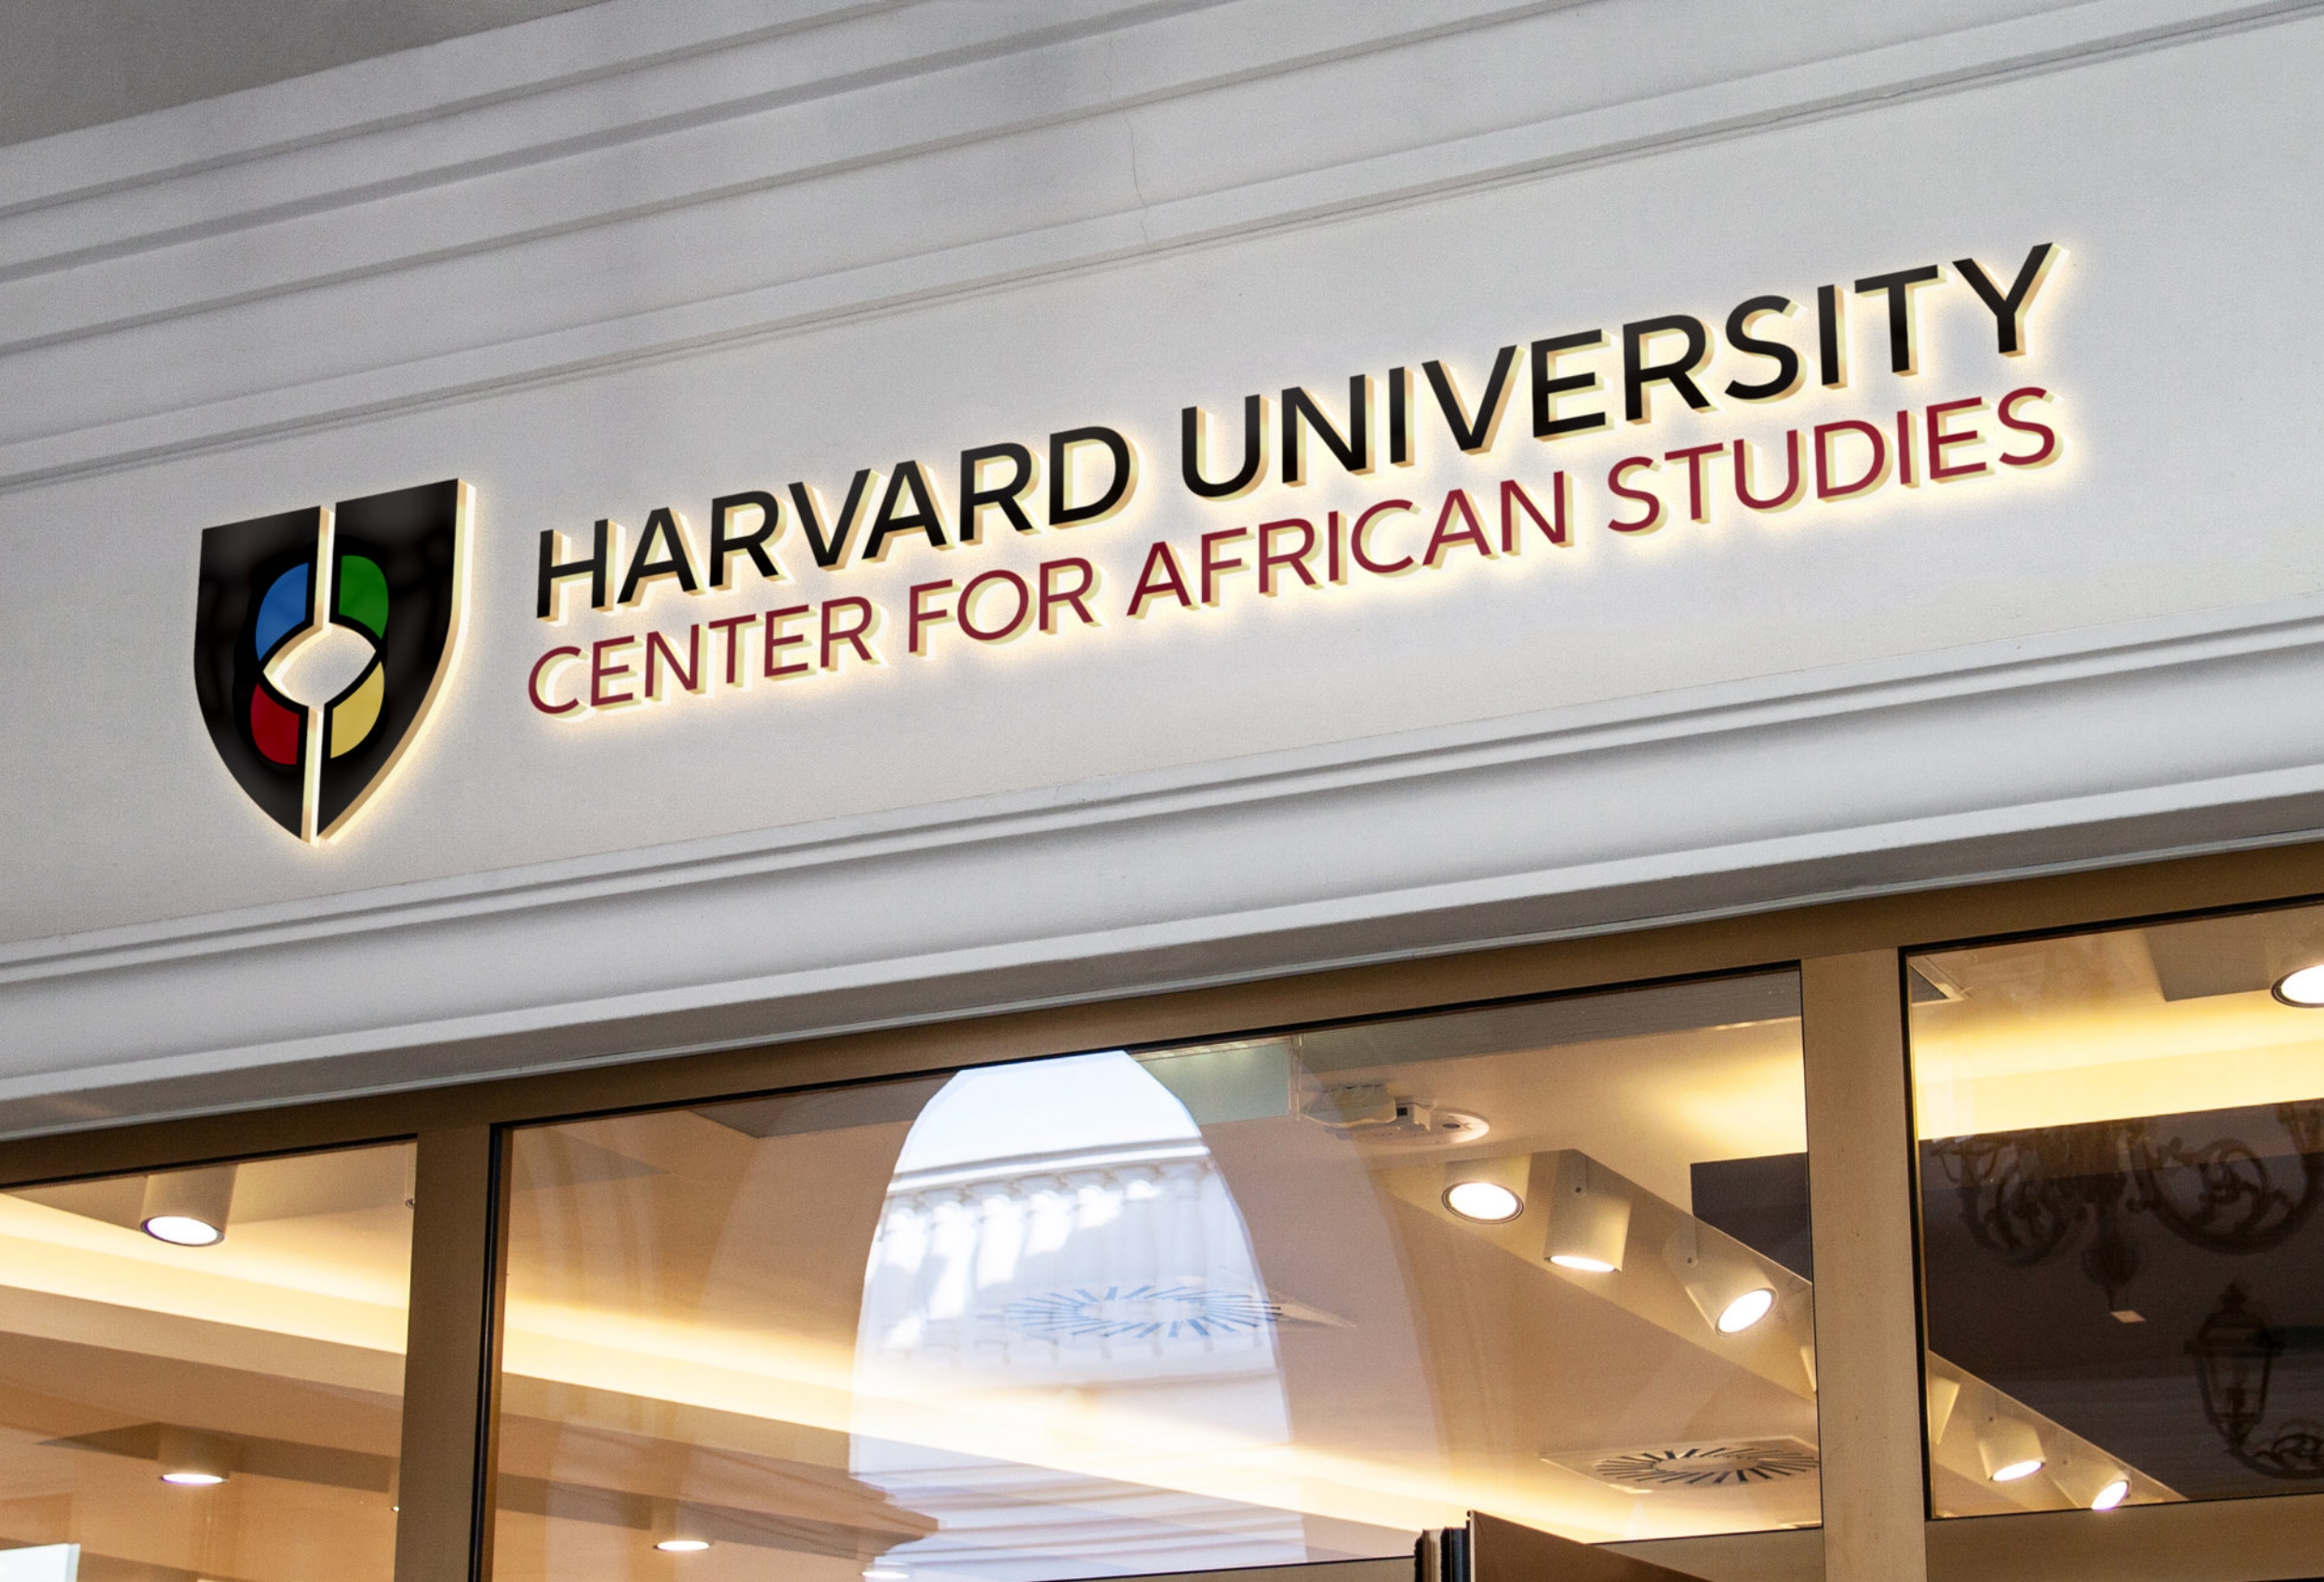 Harvard University Center for African Studies Brand Identity